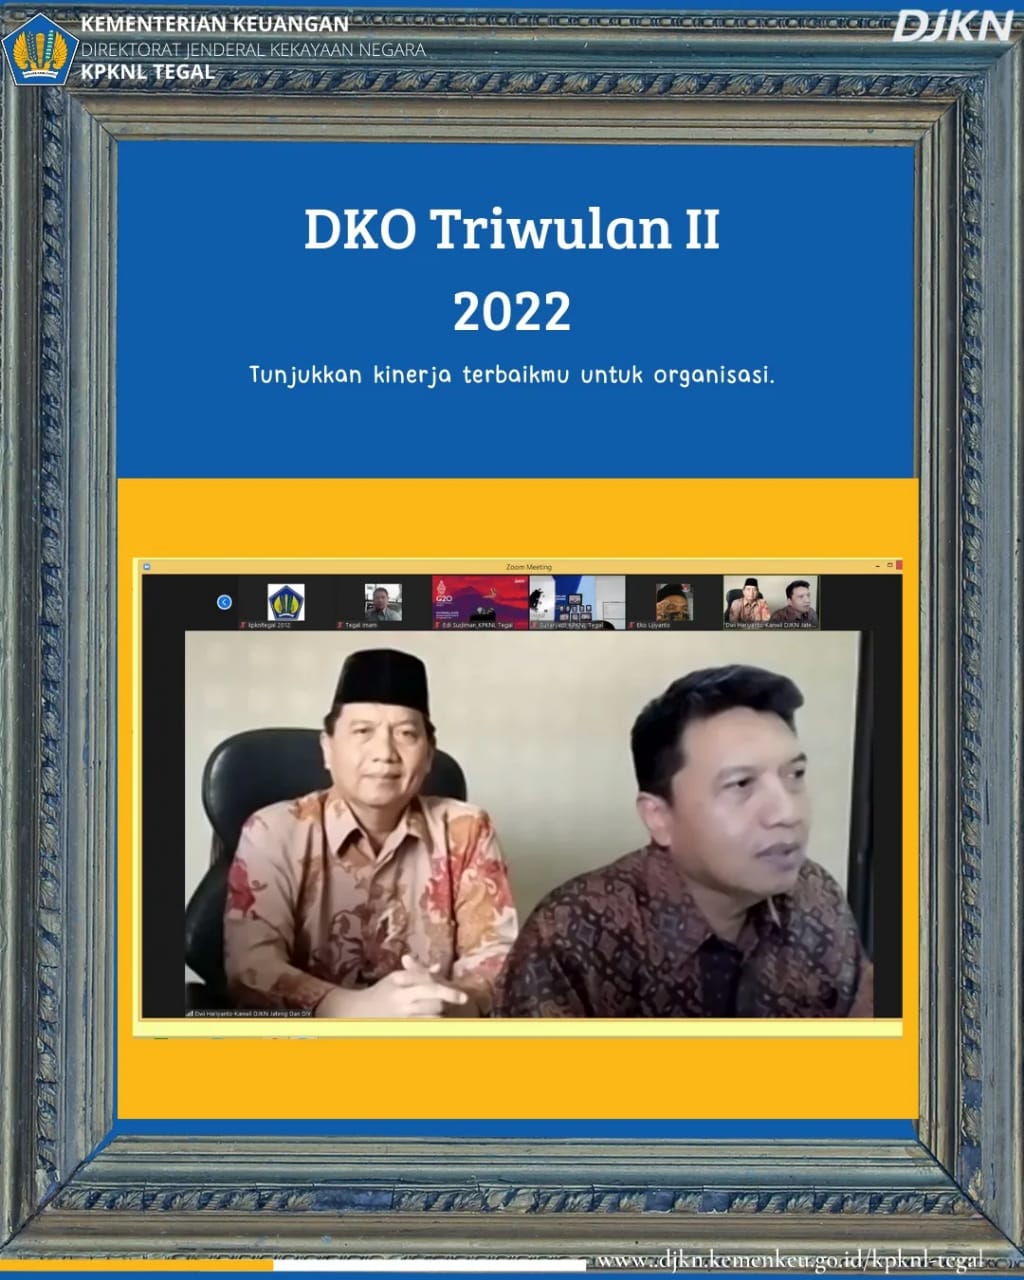 Selenggarakan DKO Triwulan II Tahun 2022, Kepala KPKNL Tegal Berpesan Untuk Tunjukkan Kinerja Terbaik Bagi Organisasi